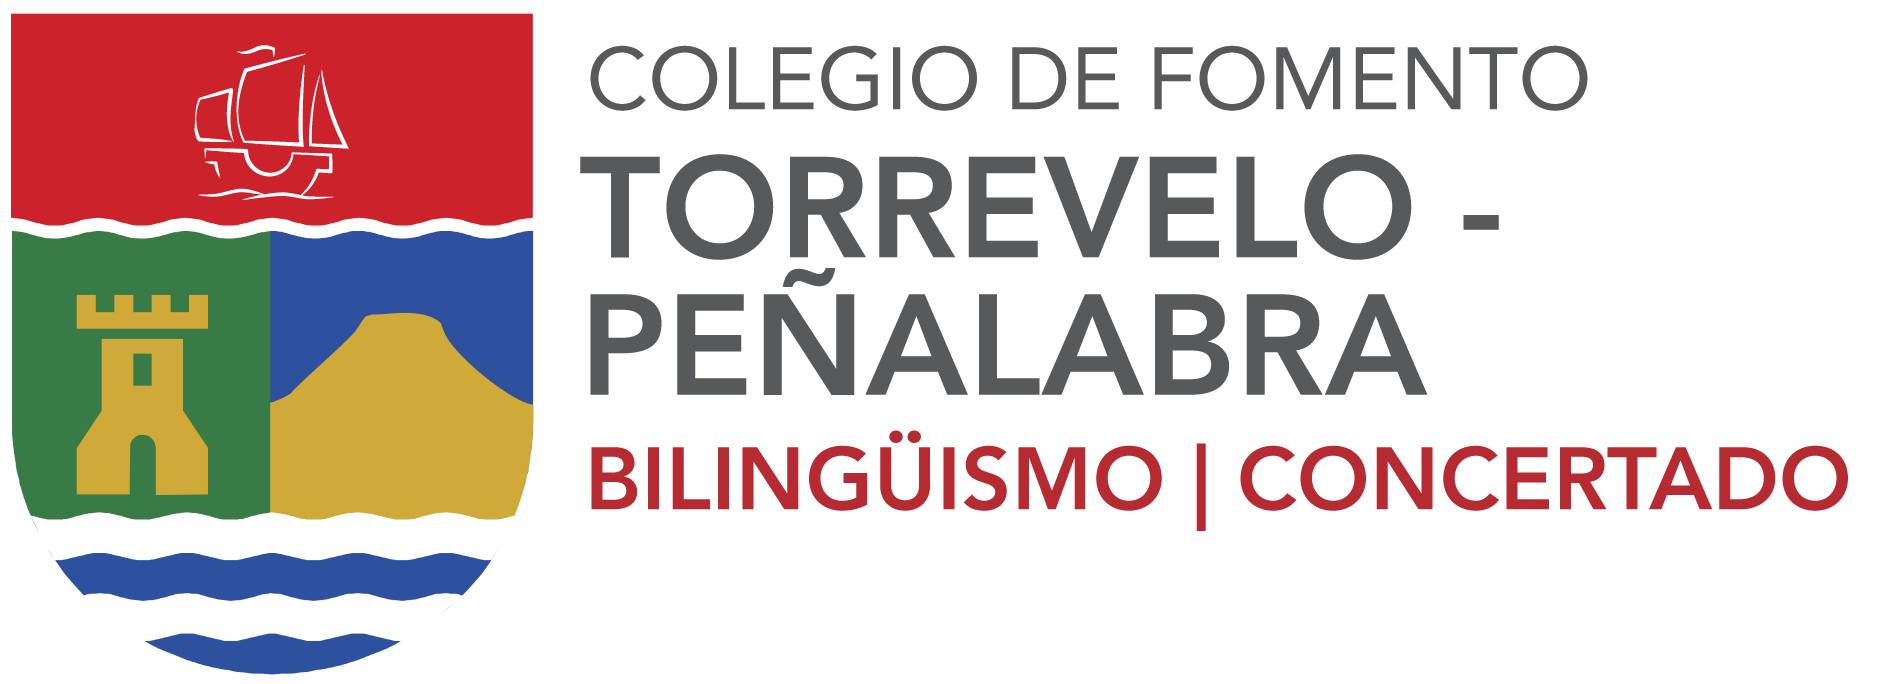 Torrevelo – Peñalabra